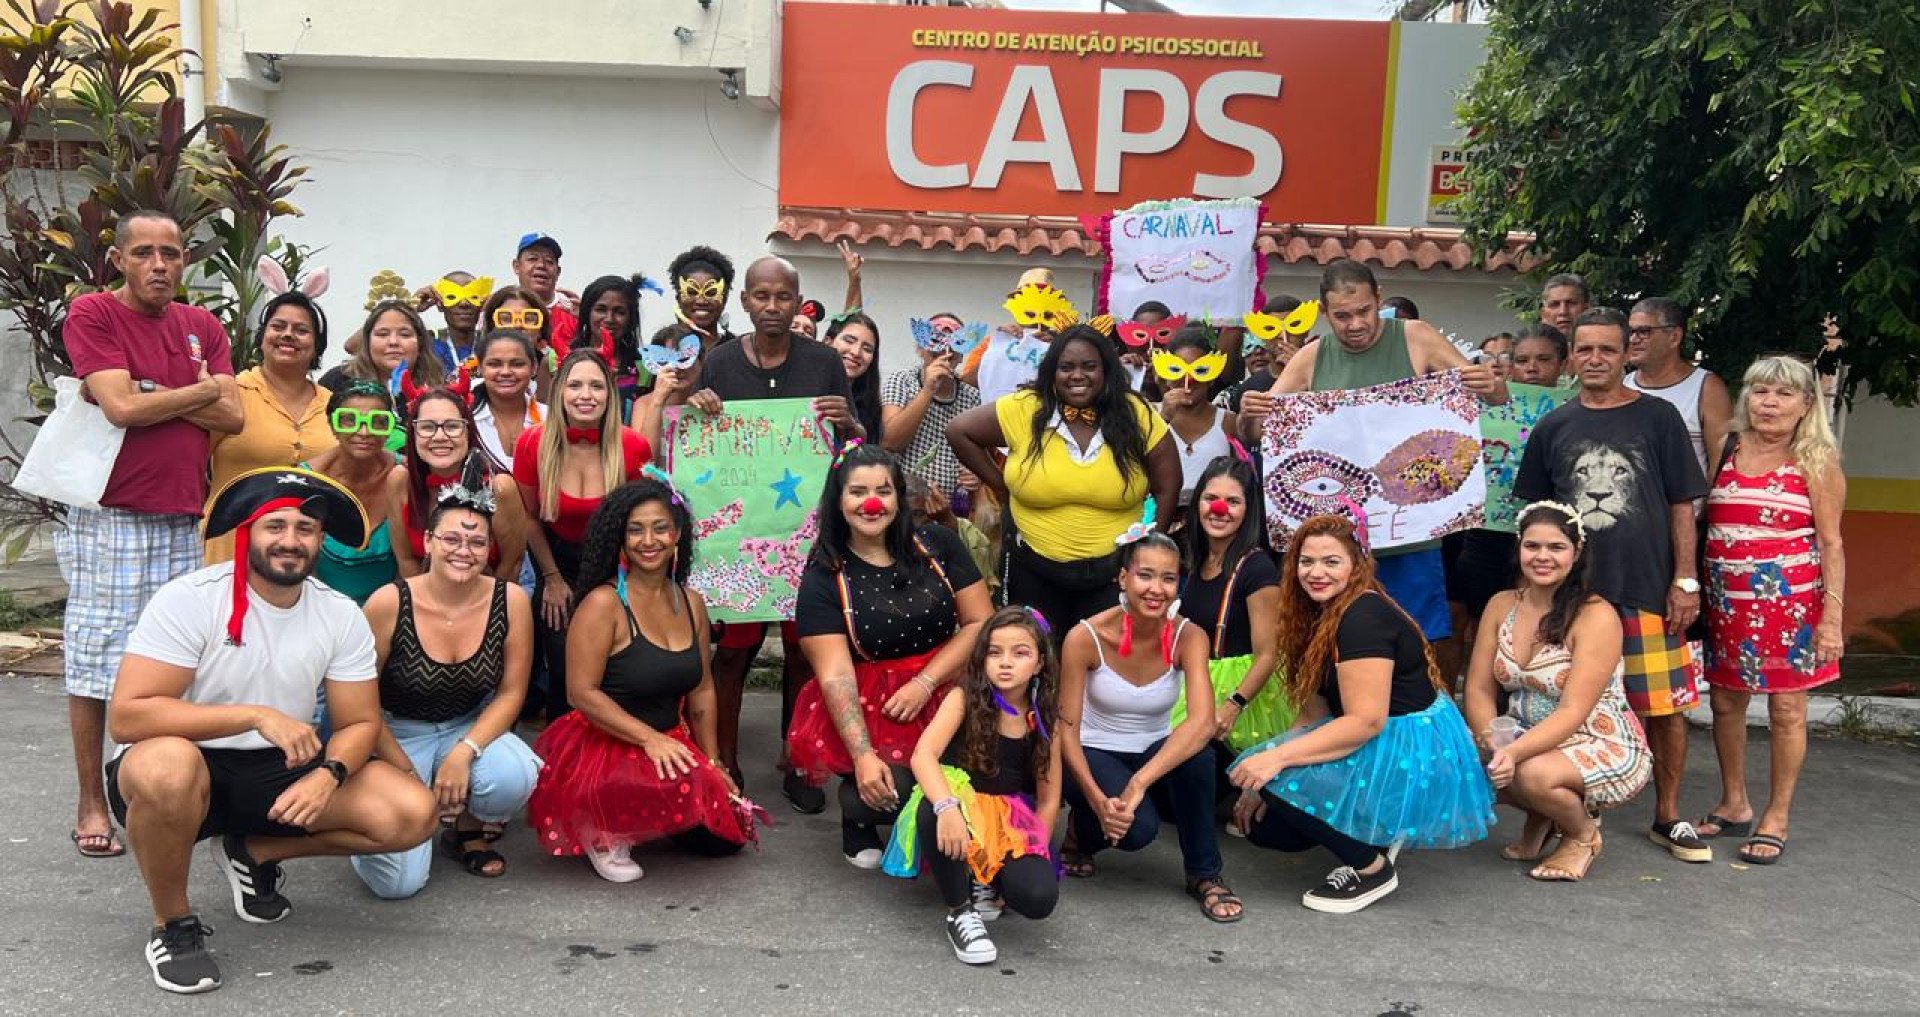 Com muitas máscaras, cartazes e acessórios de cabelo, a equipe do Caps criou um ambiente festivo com muita diversão - Divulgação / PMBR